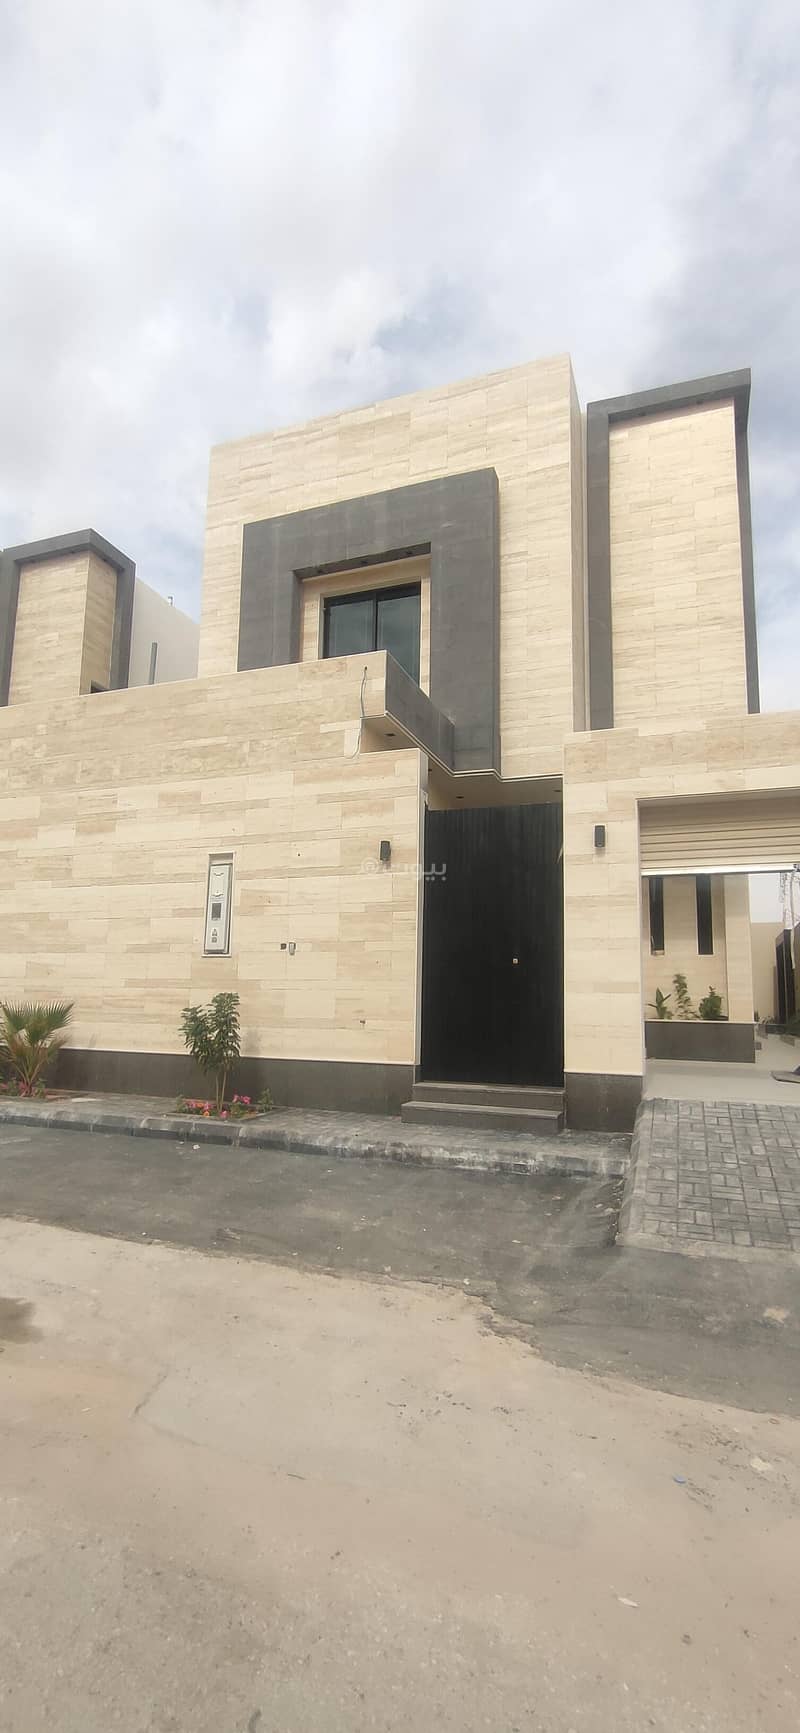 Luxury Internal Staircase Villa For Sale In Al Munsiyah, East Riyadh